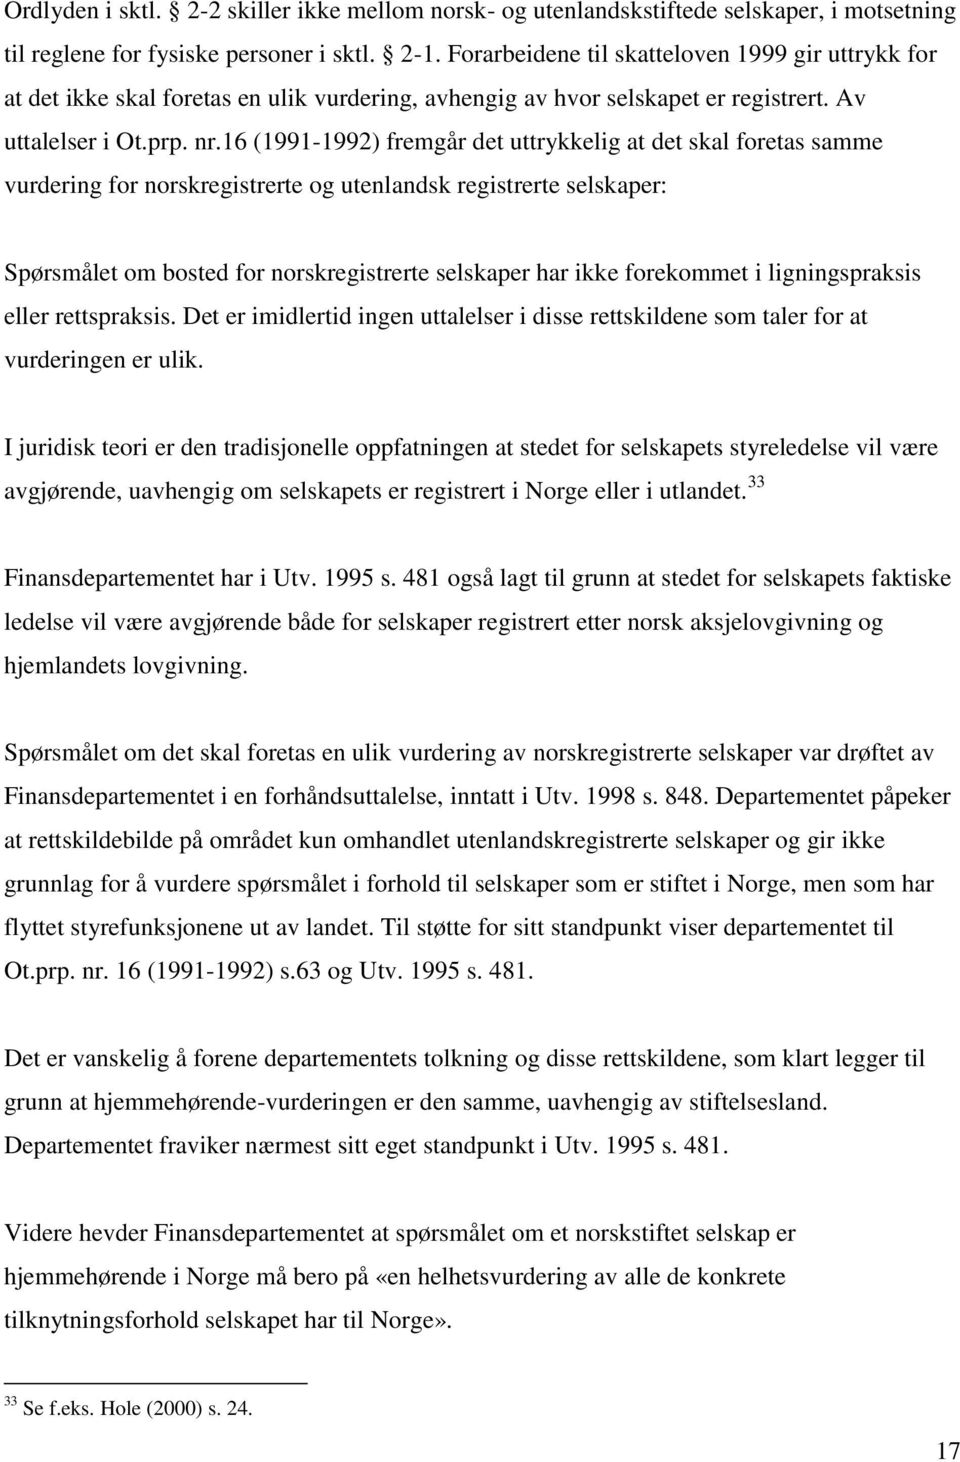 16 (1991-1992) fremgår det uttrykkelig at det skal foretas samme vurdering for norskregistrerte og utenlandsk registrerte selskaper: Spørsmålet om bosted for norskregistrerte selskaper har ikke